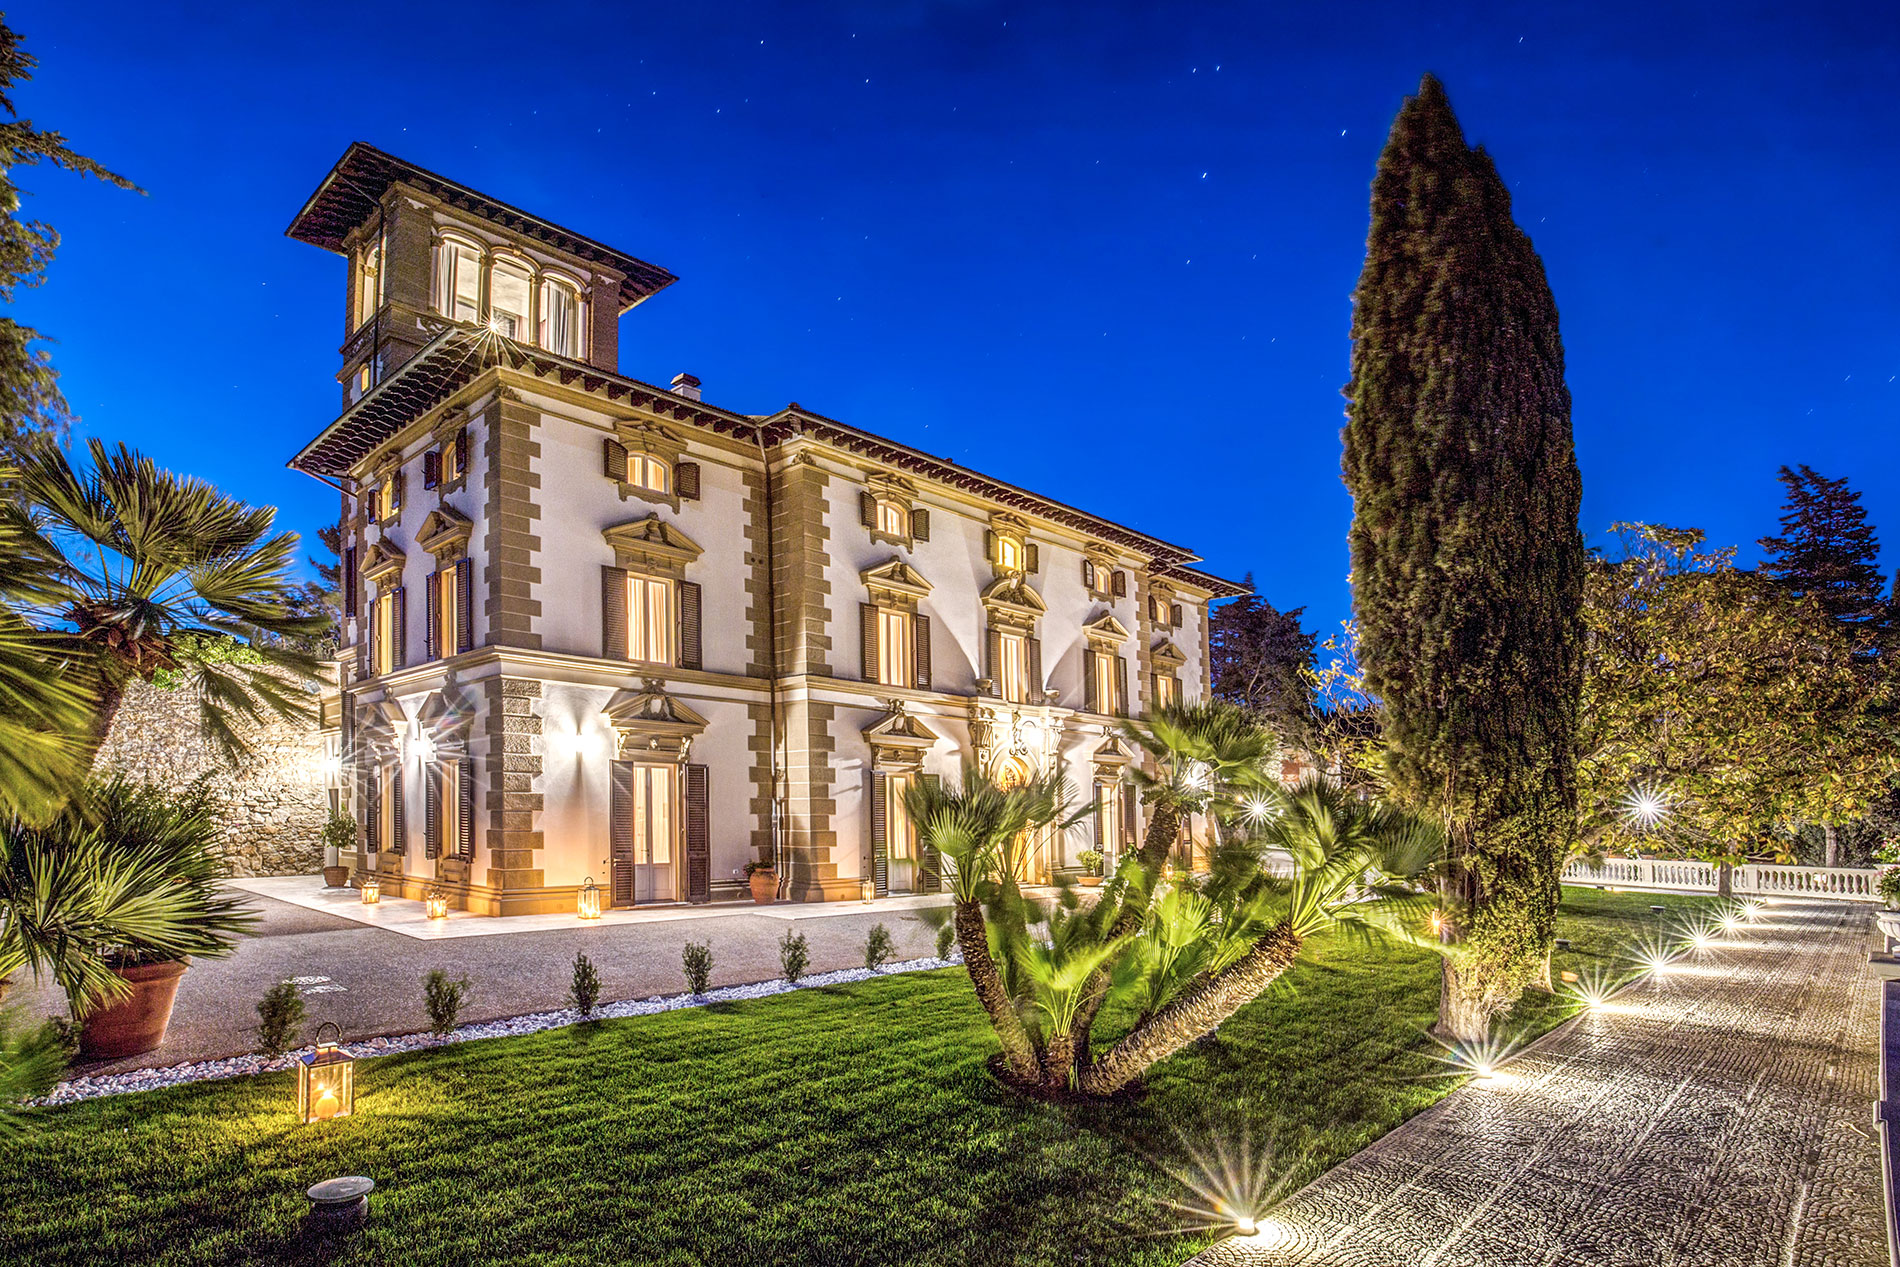 Villa Paolina Tuscany